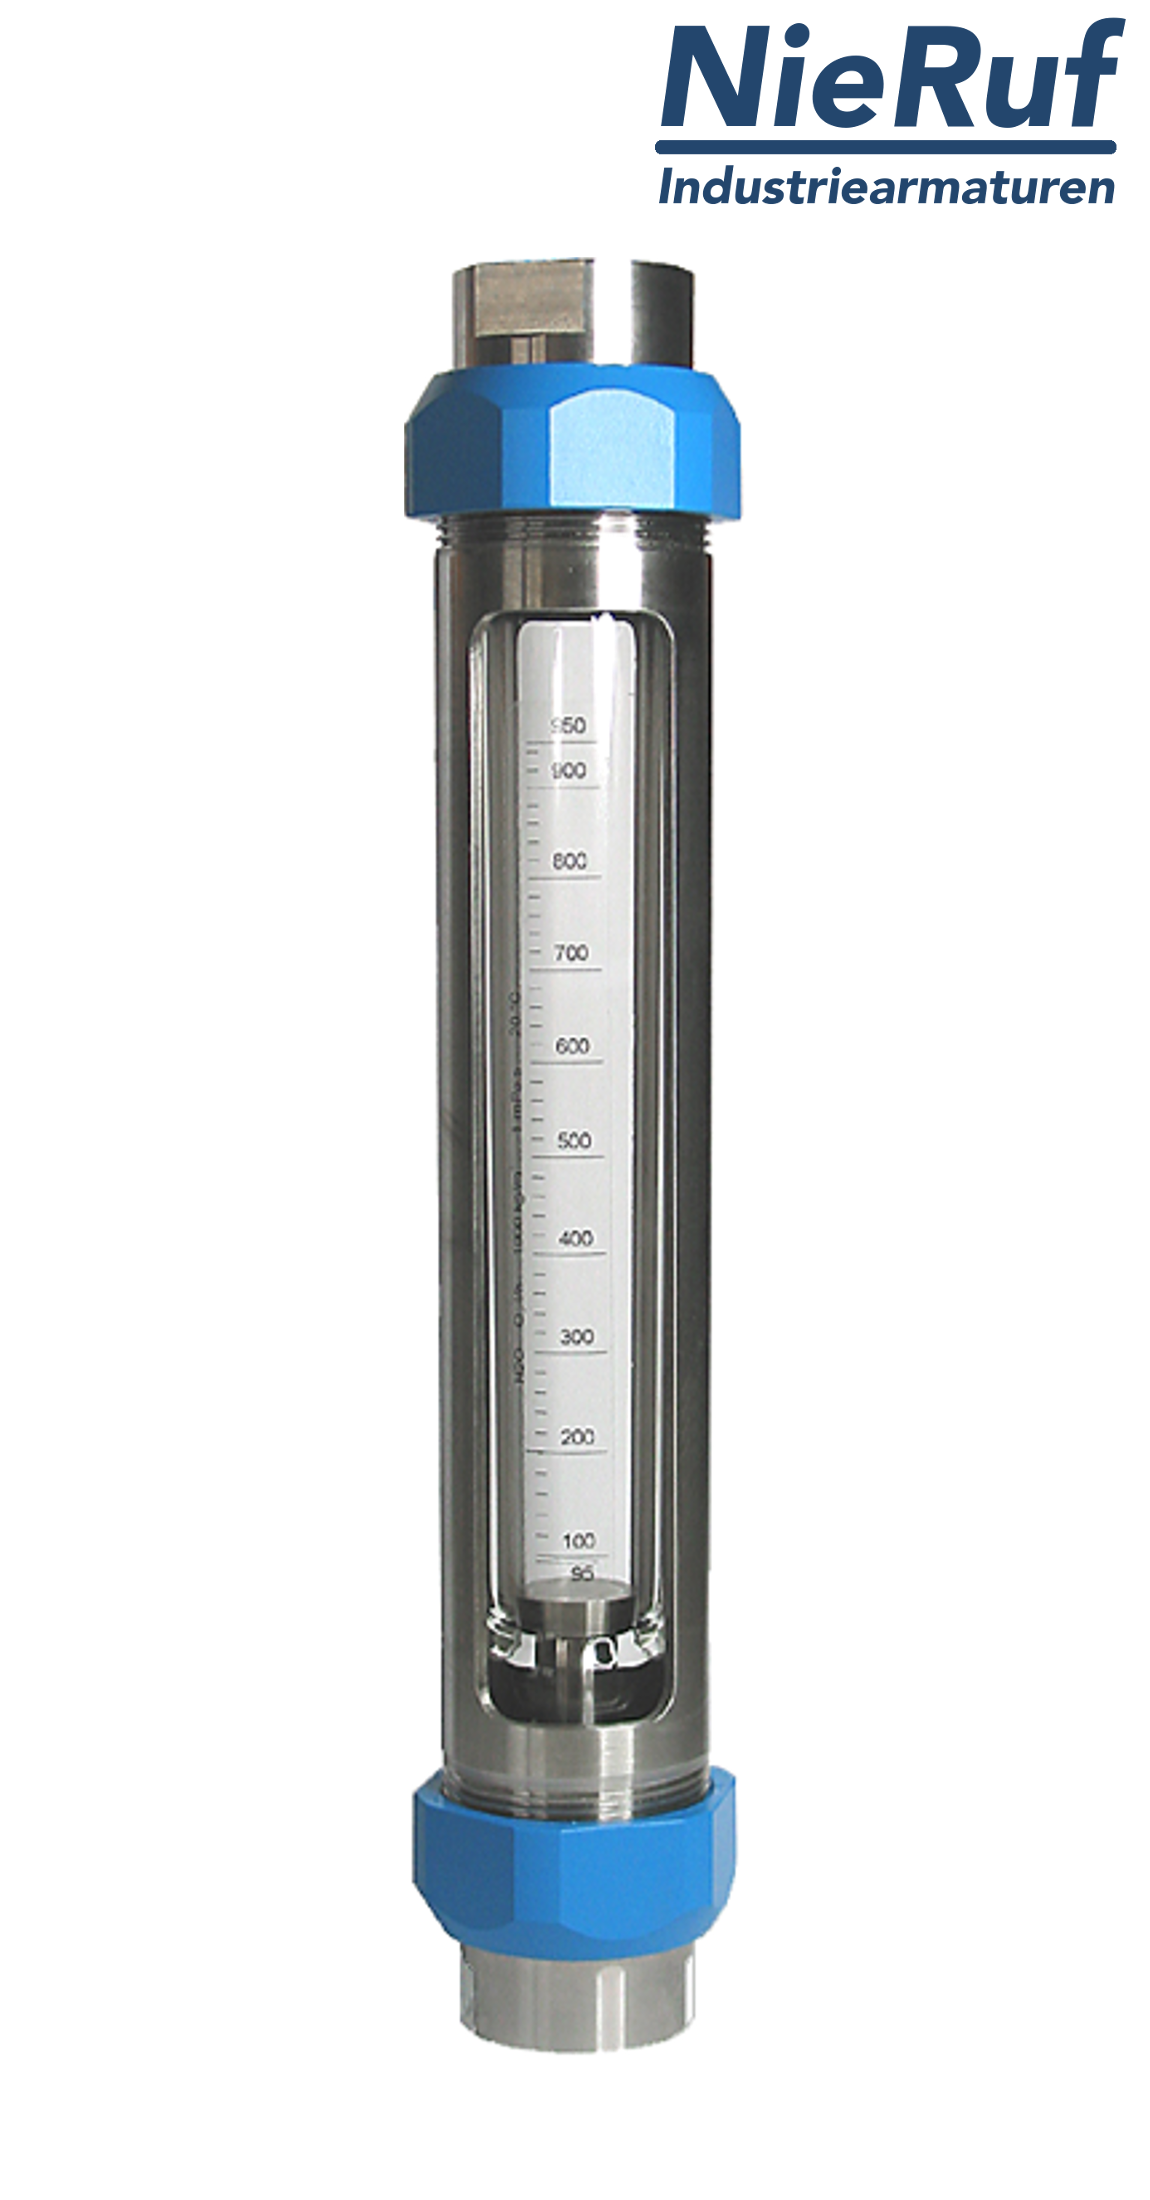 débitmètre à flotteur en acier inoxydable 1" pouce 250,0 - 2500 l/h eau FKM